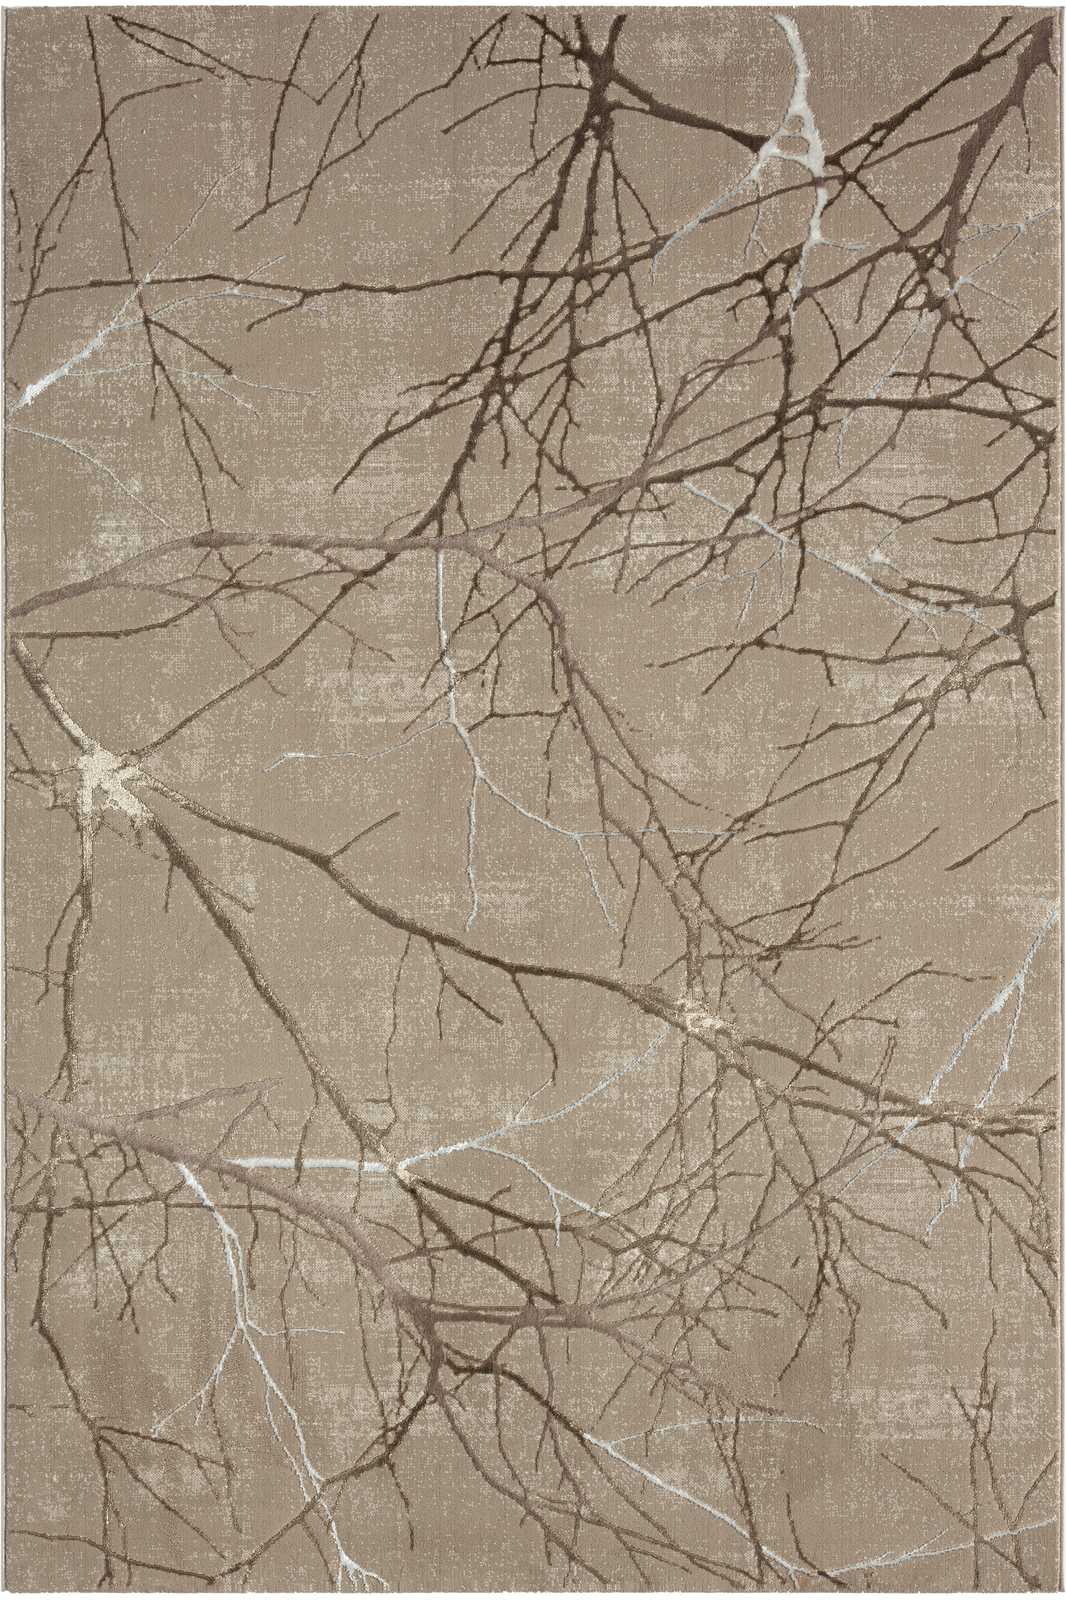             Hochflor Teppich in zarten Beige – 290 x 200 cm
        